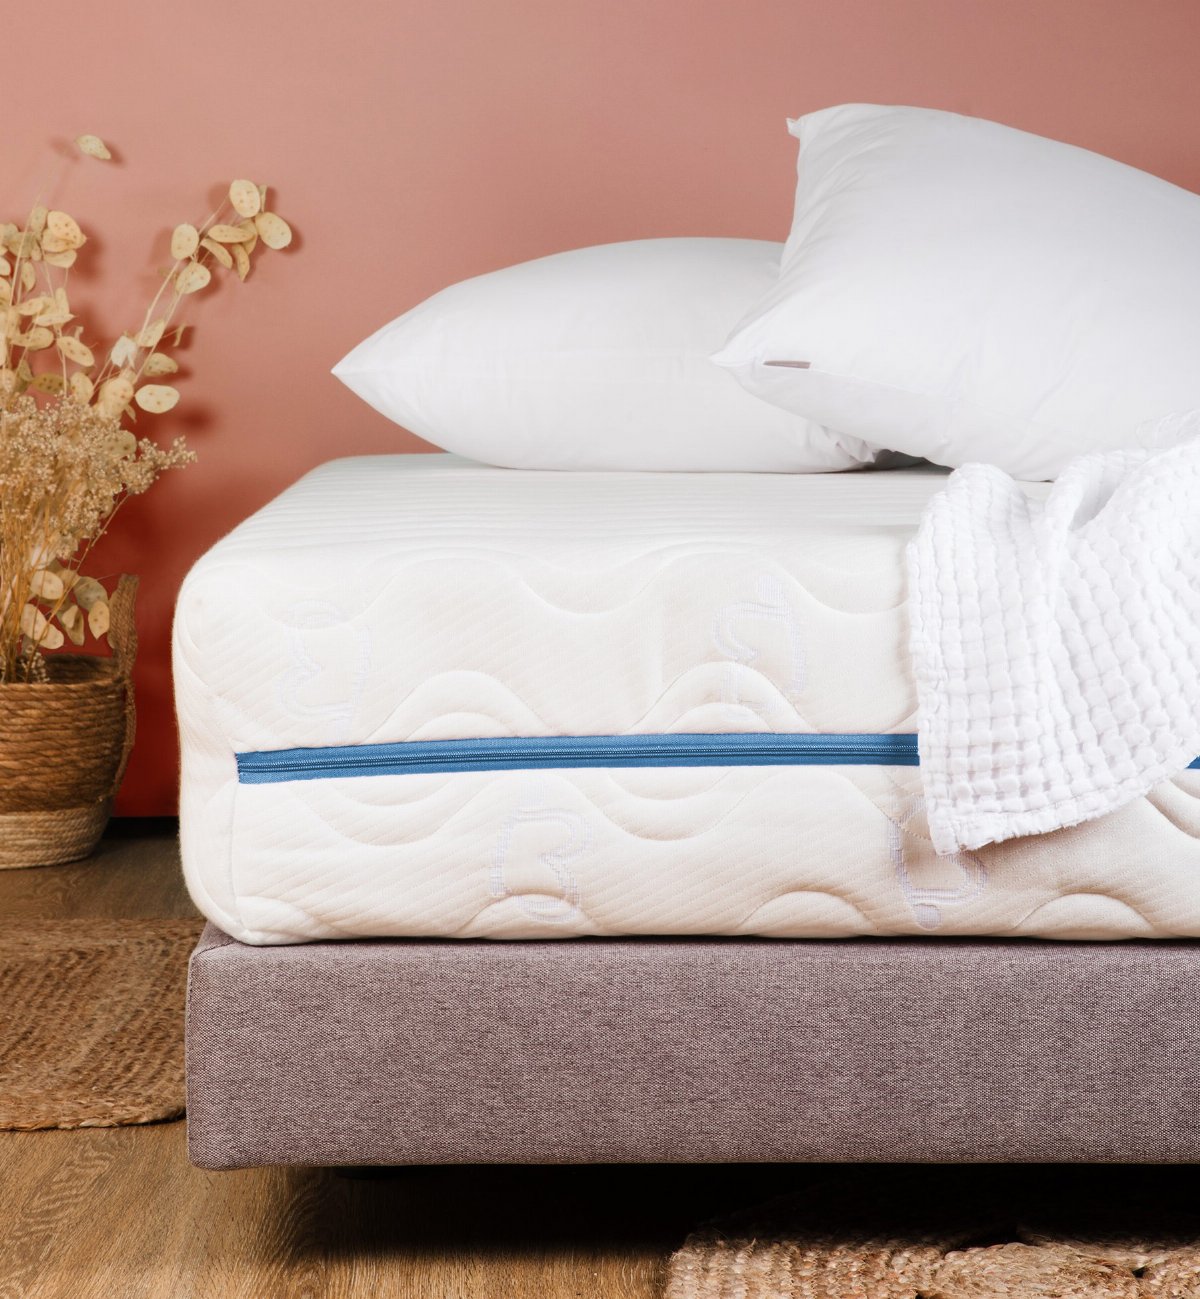 Protector de colchón de 160x200 cm color blanco para colchones Super Queen  size Forme